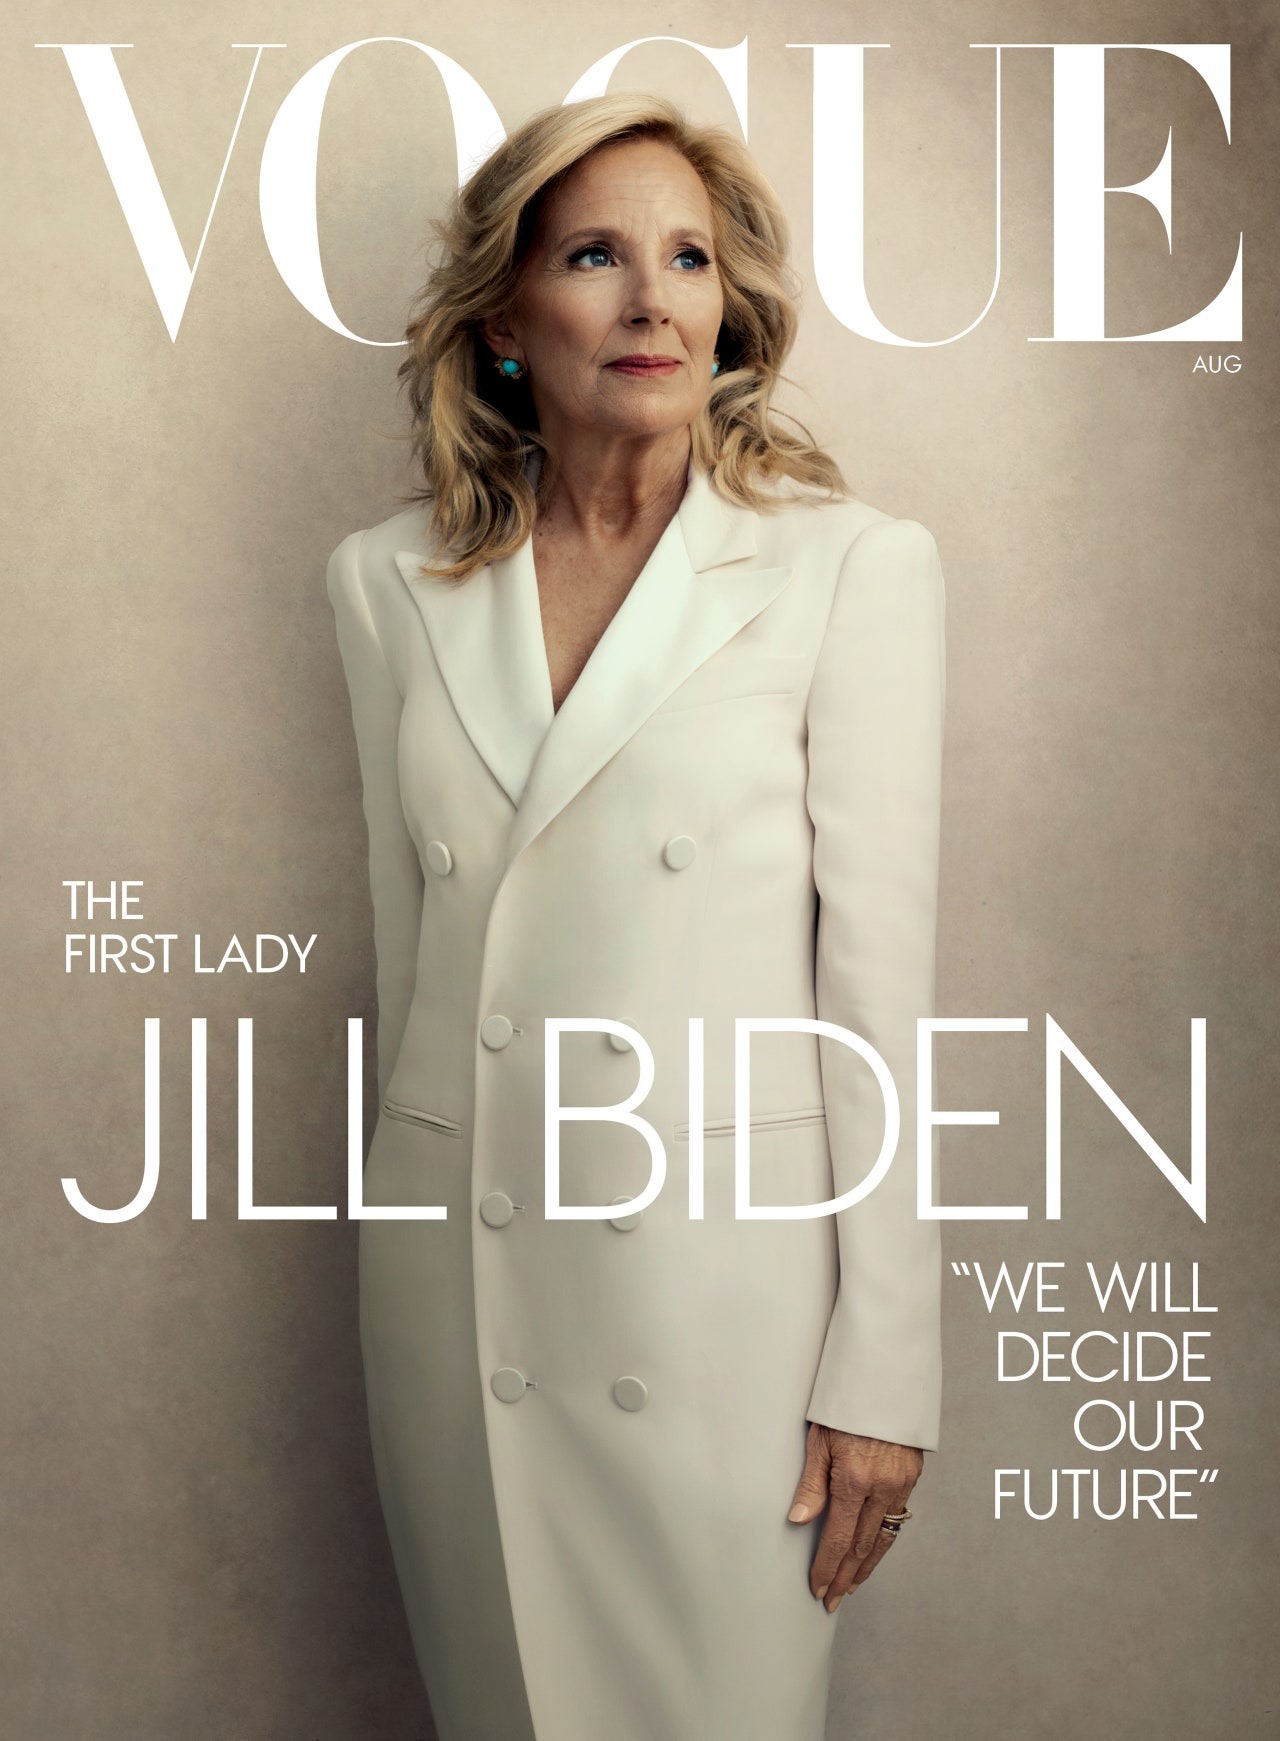 时尚杂志《Vogue》刊出第一夫人吉儿‧拜登(Jill Biden)专访。(取自Vogue官网)